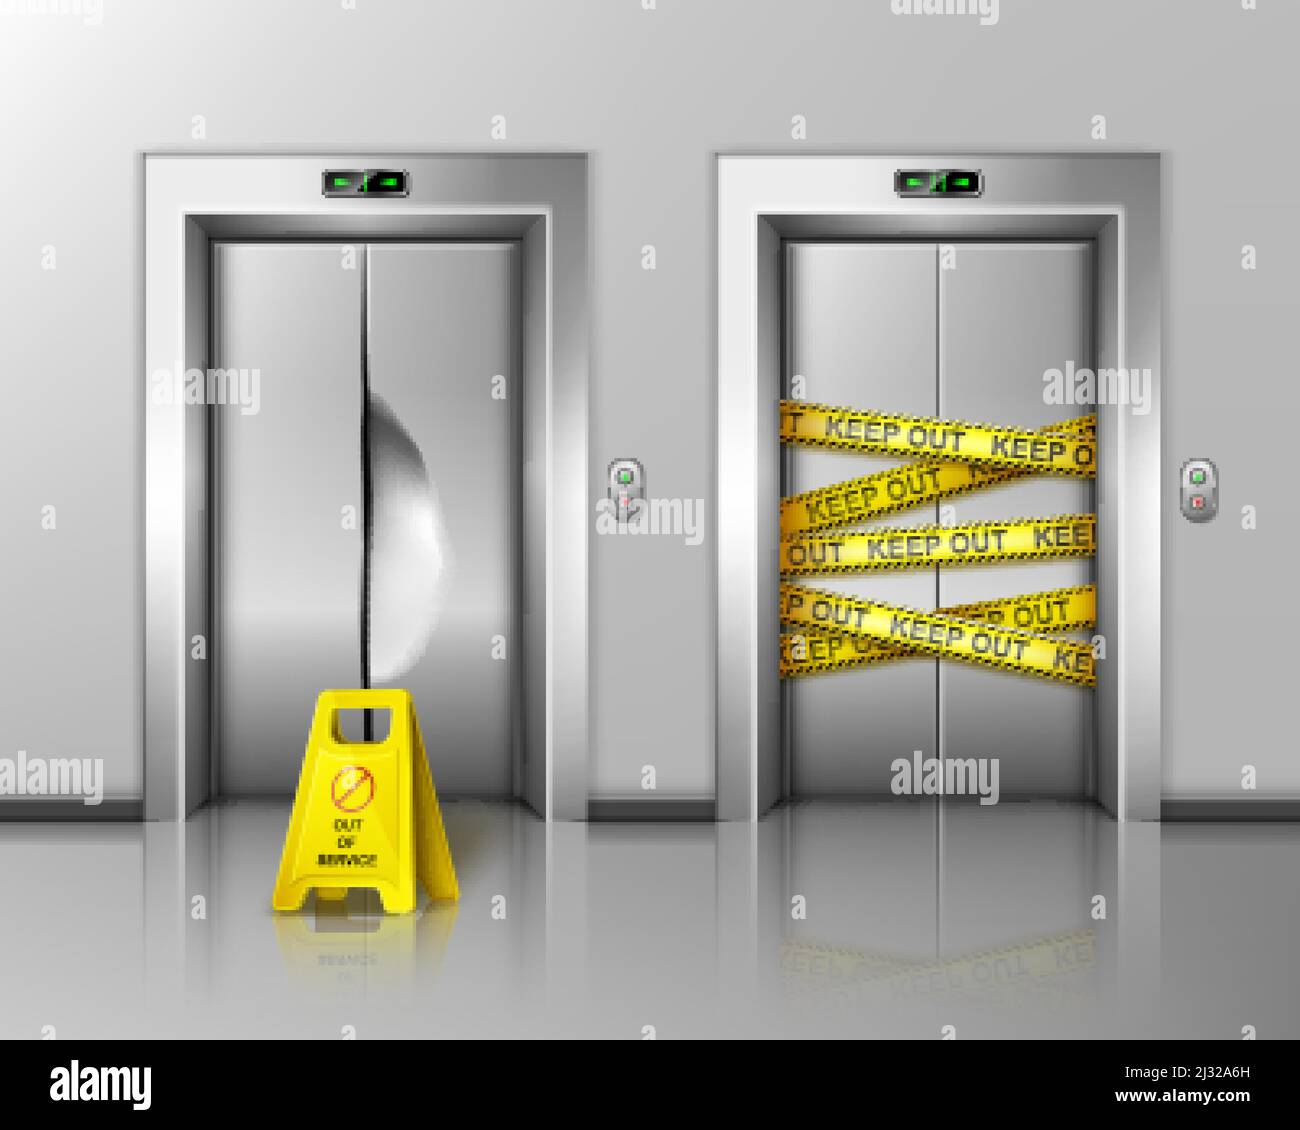 Kaputte Aufzüge wegen Reparatur oder Wartung geschlossen. Warnschild stehen in der Nähe von Aufzug beschädigte Türen mit Delle, Chrom-Metall-Türöffnung mit Warnin umwickelt Stock Vektor